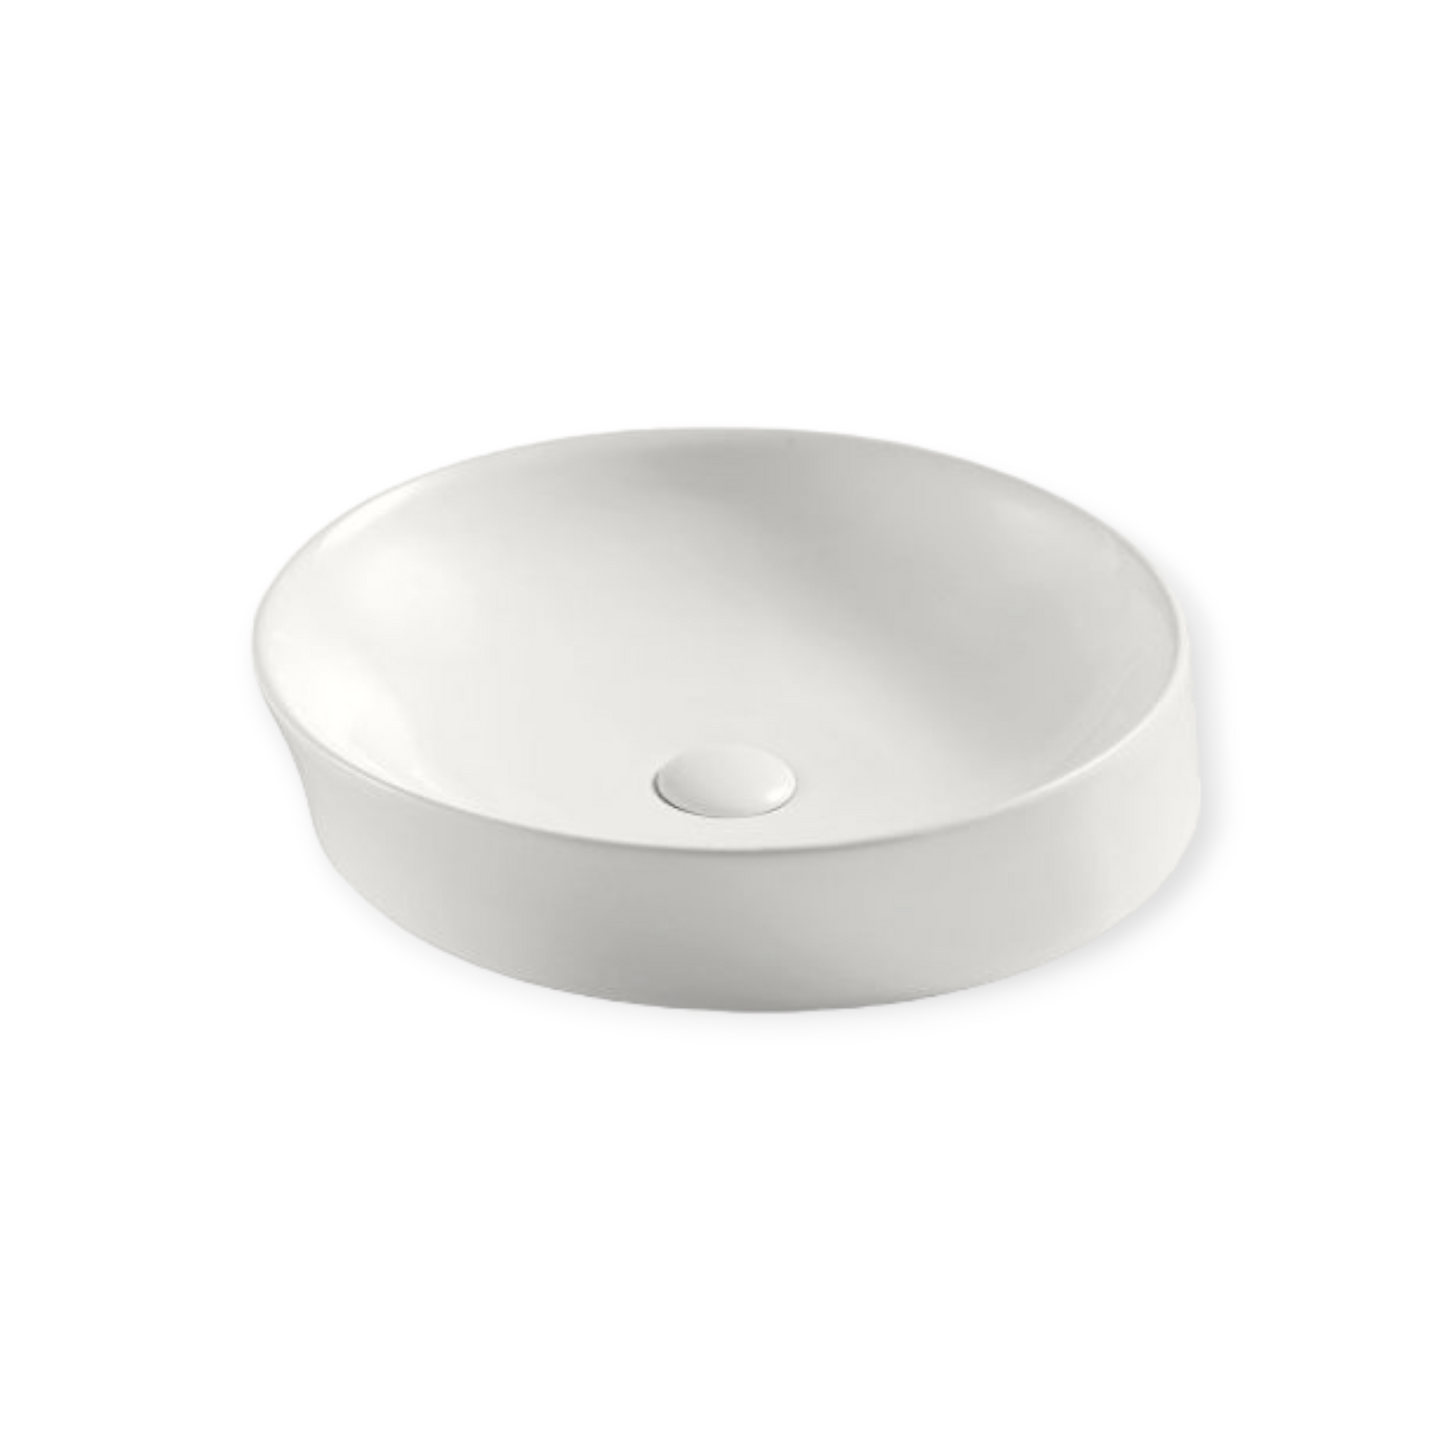 Spin Tilt Above Counter Round Basin - Gloss White